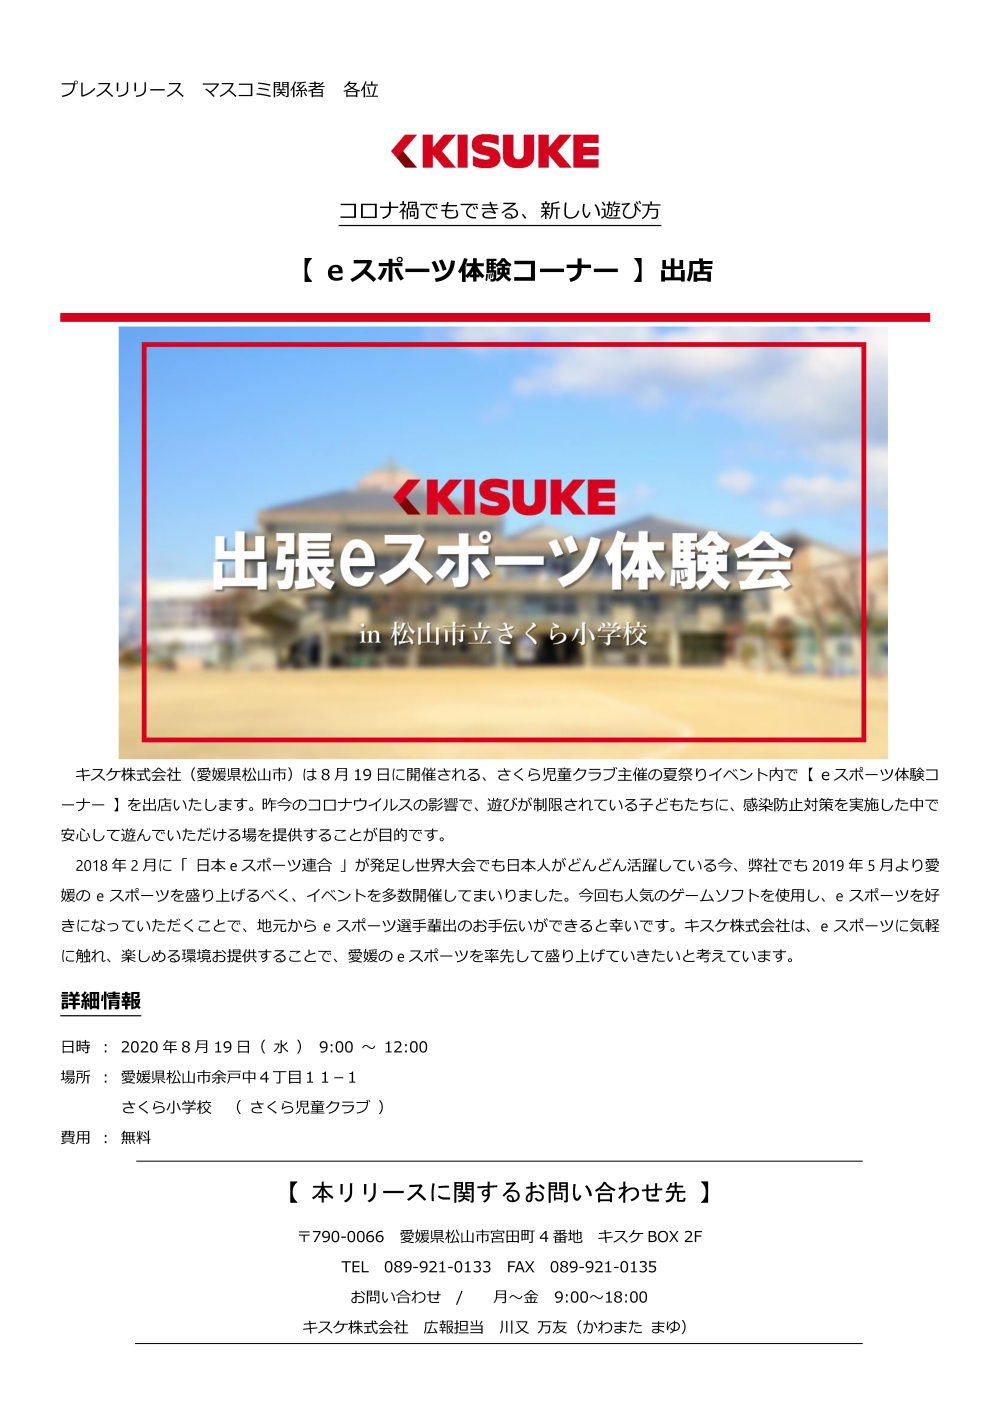 キスケ株式会社（愛媛県松山市）は8月19日に開催される、さくら児童クラブ主催の夏祭りイベント内で【eスポーツ体験コーナー】を出店いたします。昨今のコロナウイルスの影響で、遊びが制限されている子どもたちに、感染防止対策を実施した中で安心して遊んでいただける場を提供することが目的です。2018年2月に「日本eスポーツ連合」が発足し世界大会でも日本人がどんどん活躍している今、弊社でも2019年5月より愛媛のeスポーツを盛り上げるべく、イベントを多数開催してまいりました。今回も人気のゲームソフトを使用し、eスポーツを好きになっていただくことで、地元からeスポーツ選手輩出のお手伝いができると幸いです。キスケ株式会社は、eスポーツに気軽に触れ、楽しめる環境お提供することで、愛媛のeスポーツを率先して盛り上げていきたいと考えています。
